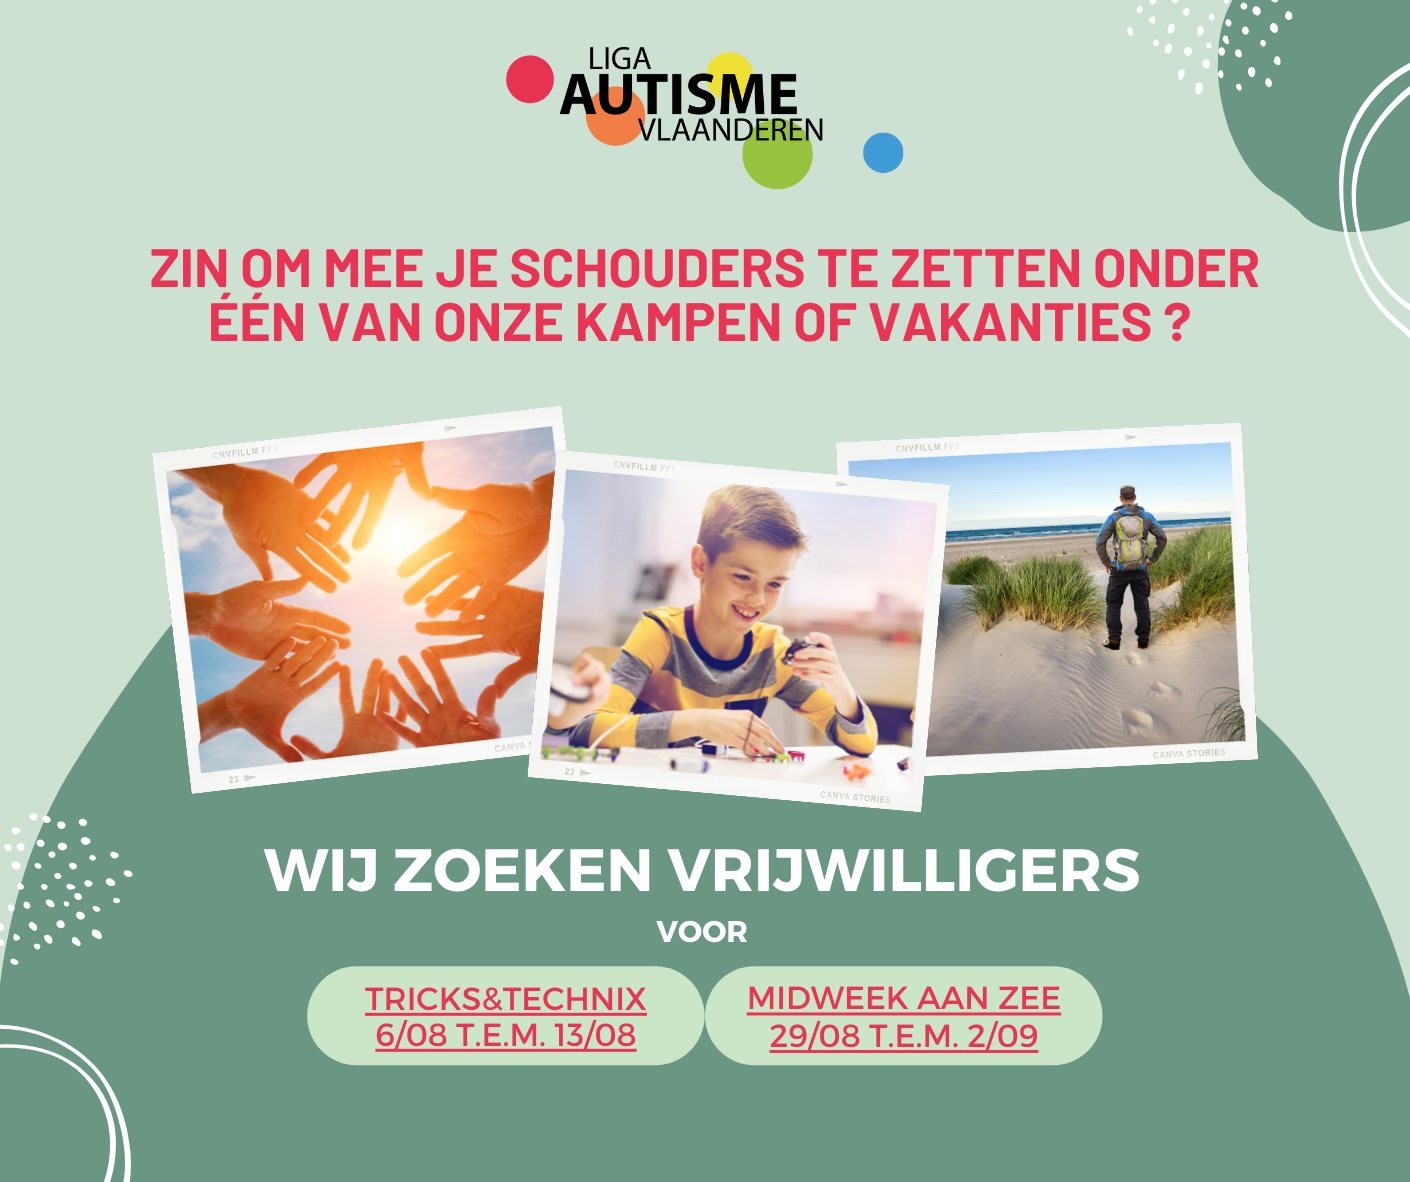 Liga Autisme Vlaanderen zoekt nog vrijwilligers